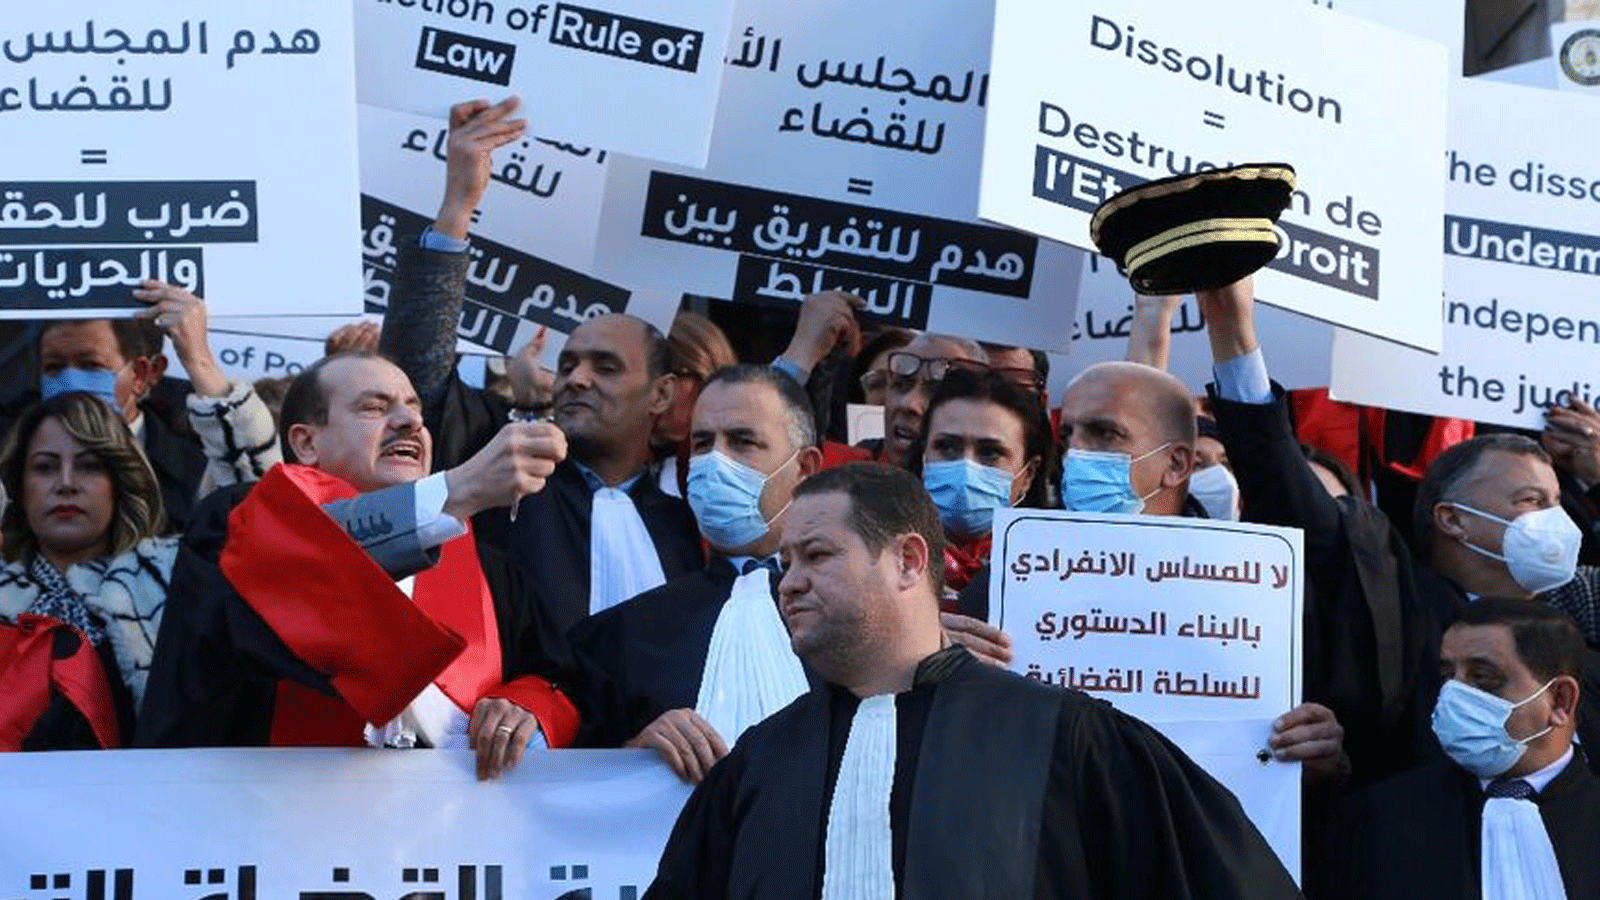 تونس: قضاة يتظاهرون ضد حل مجلس القضاء الأعلى